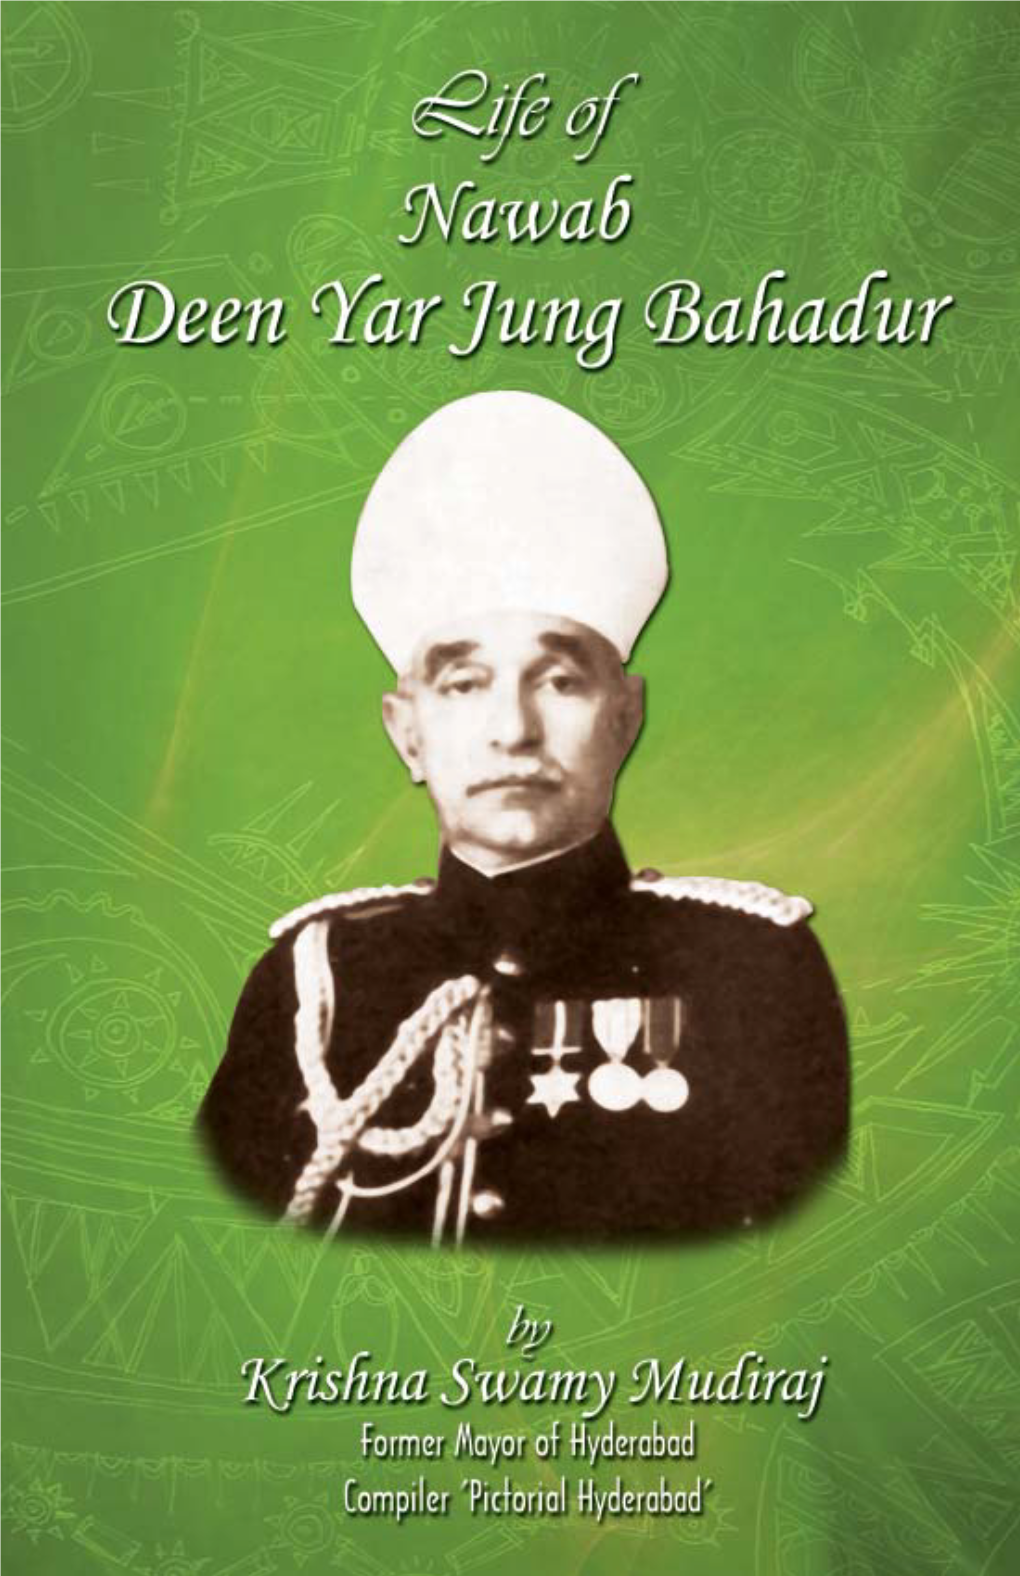 Life of Nawab Deen Yar Jung Bahadur